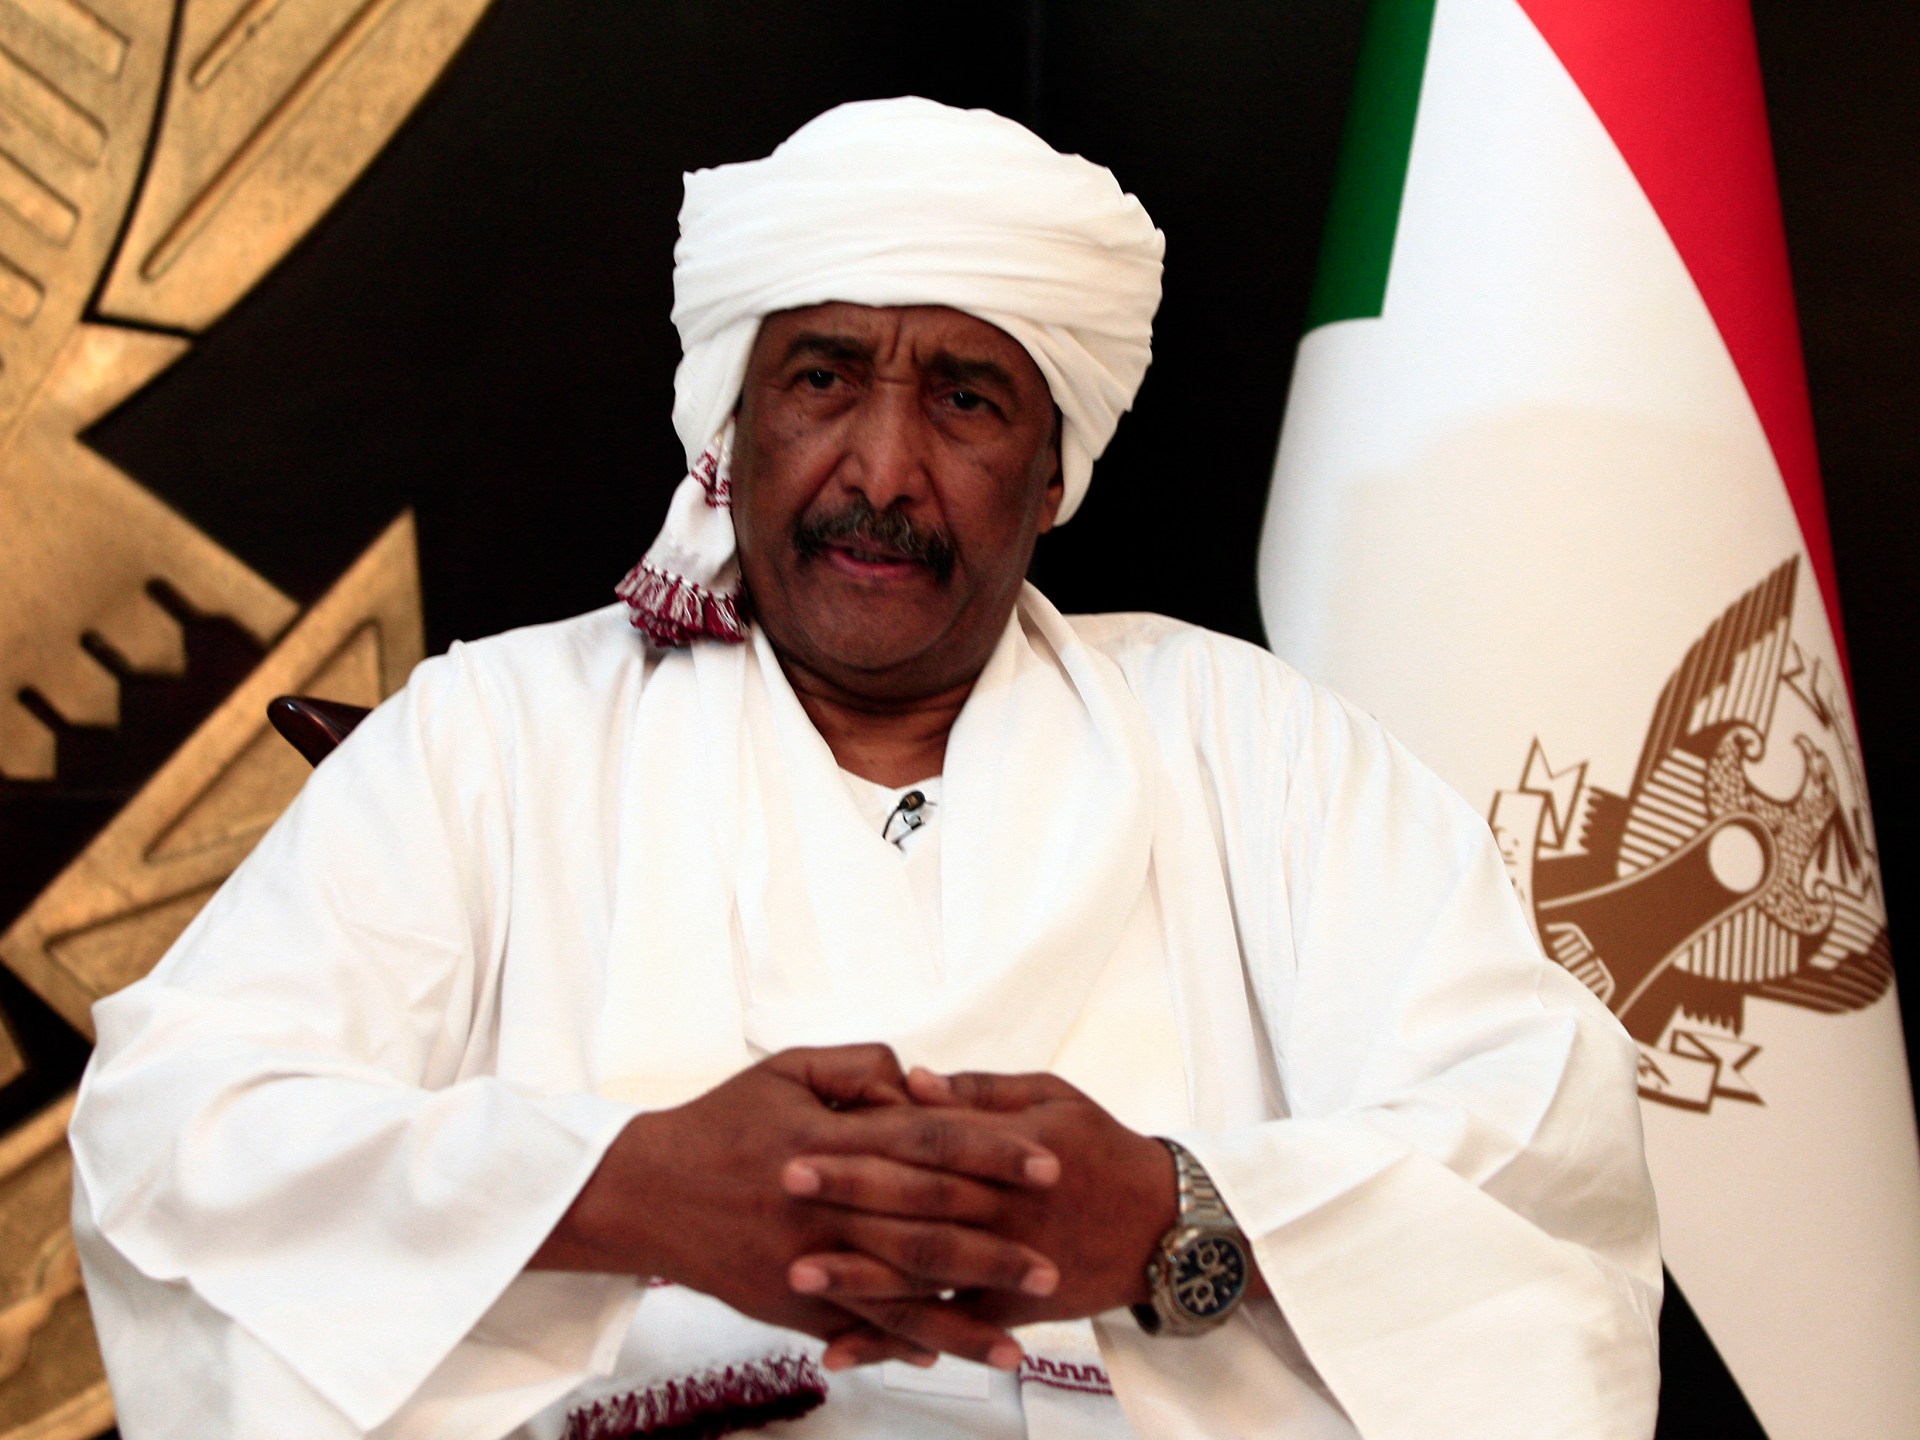 Konflik Sudan: Perundingan Tanpa Gencatan Senjata Tidak Ada Manfaatnya, Kata al-Burhan |  Berita Konflik